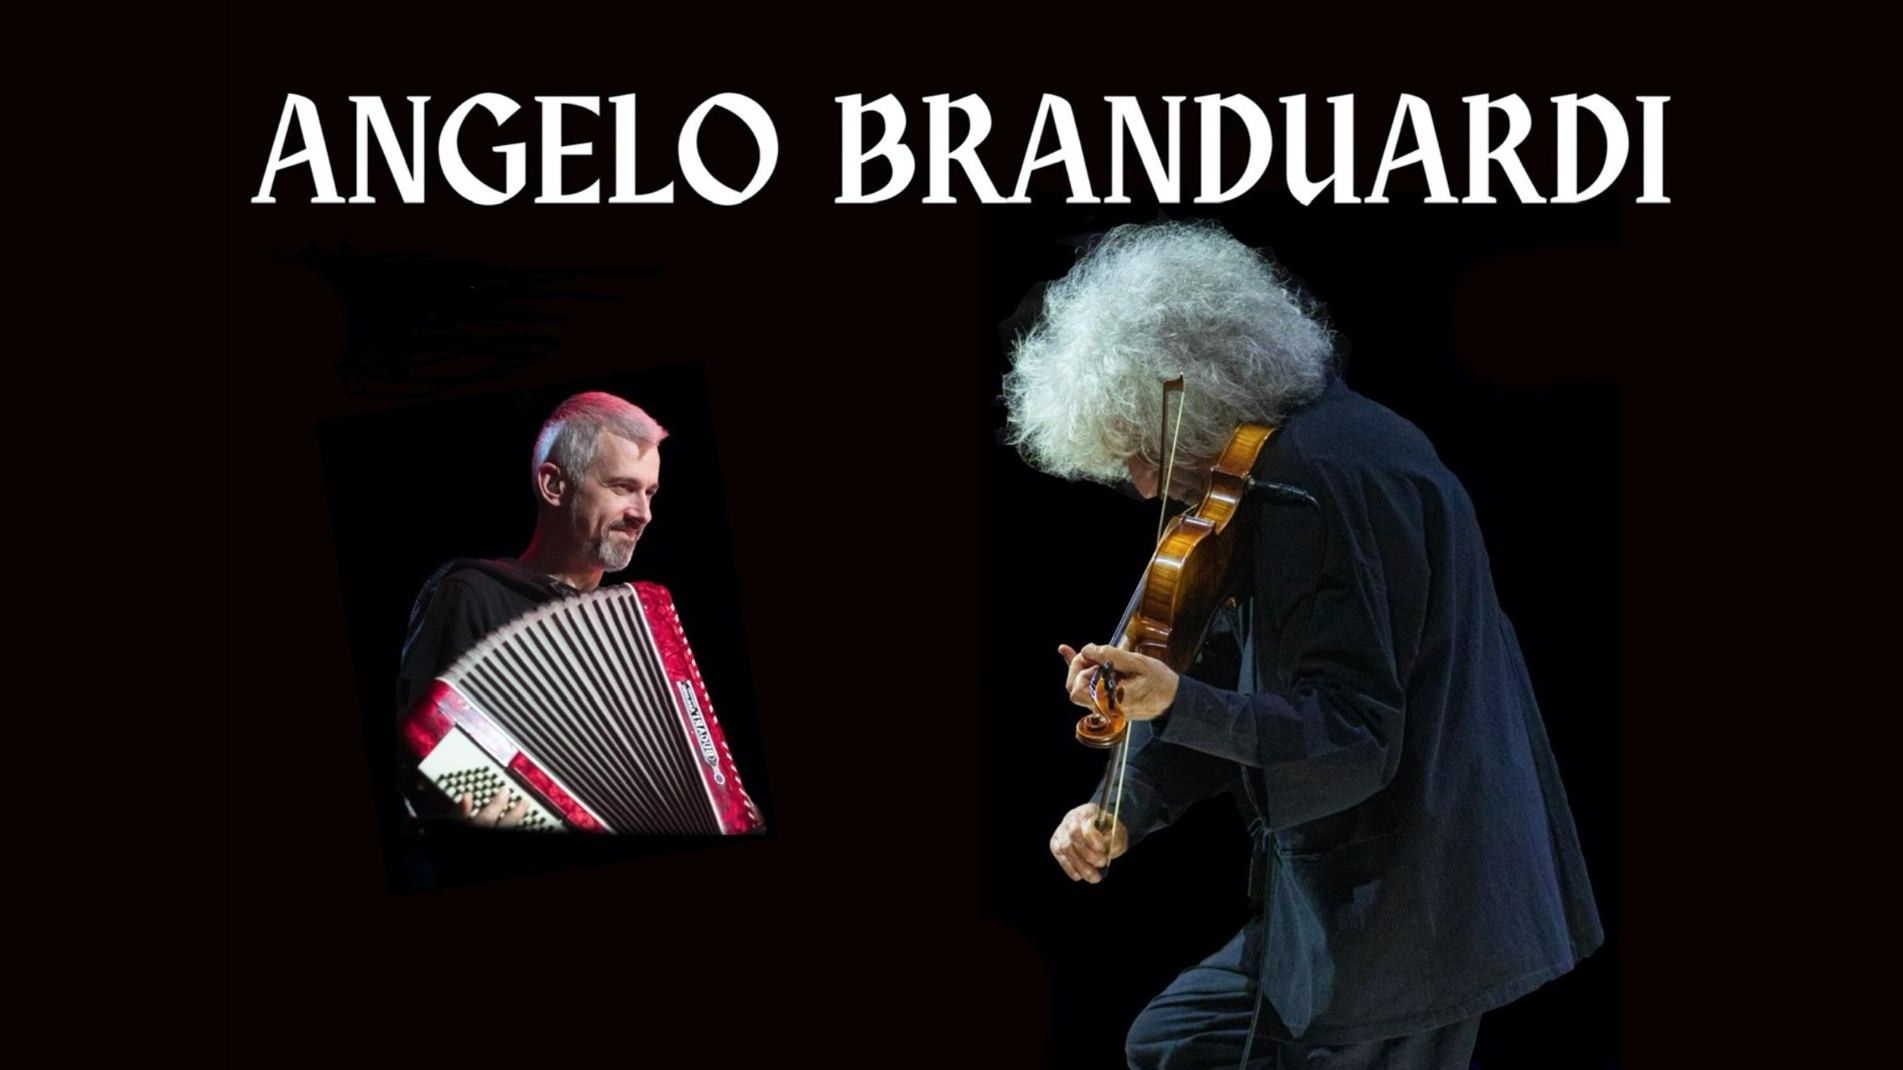 Angelo Branduardi - "Confessioni Di Un Malandrino"